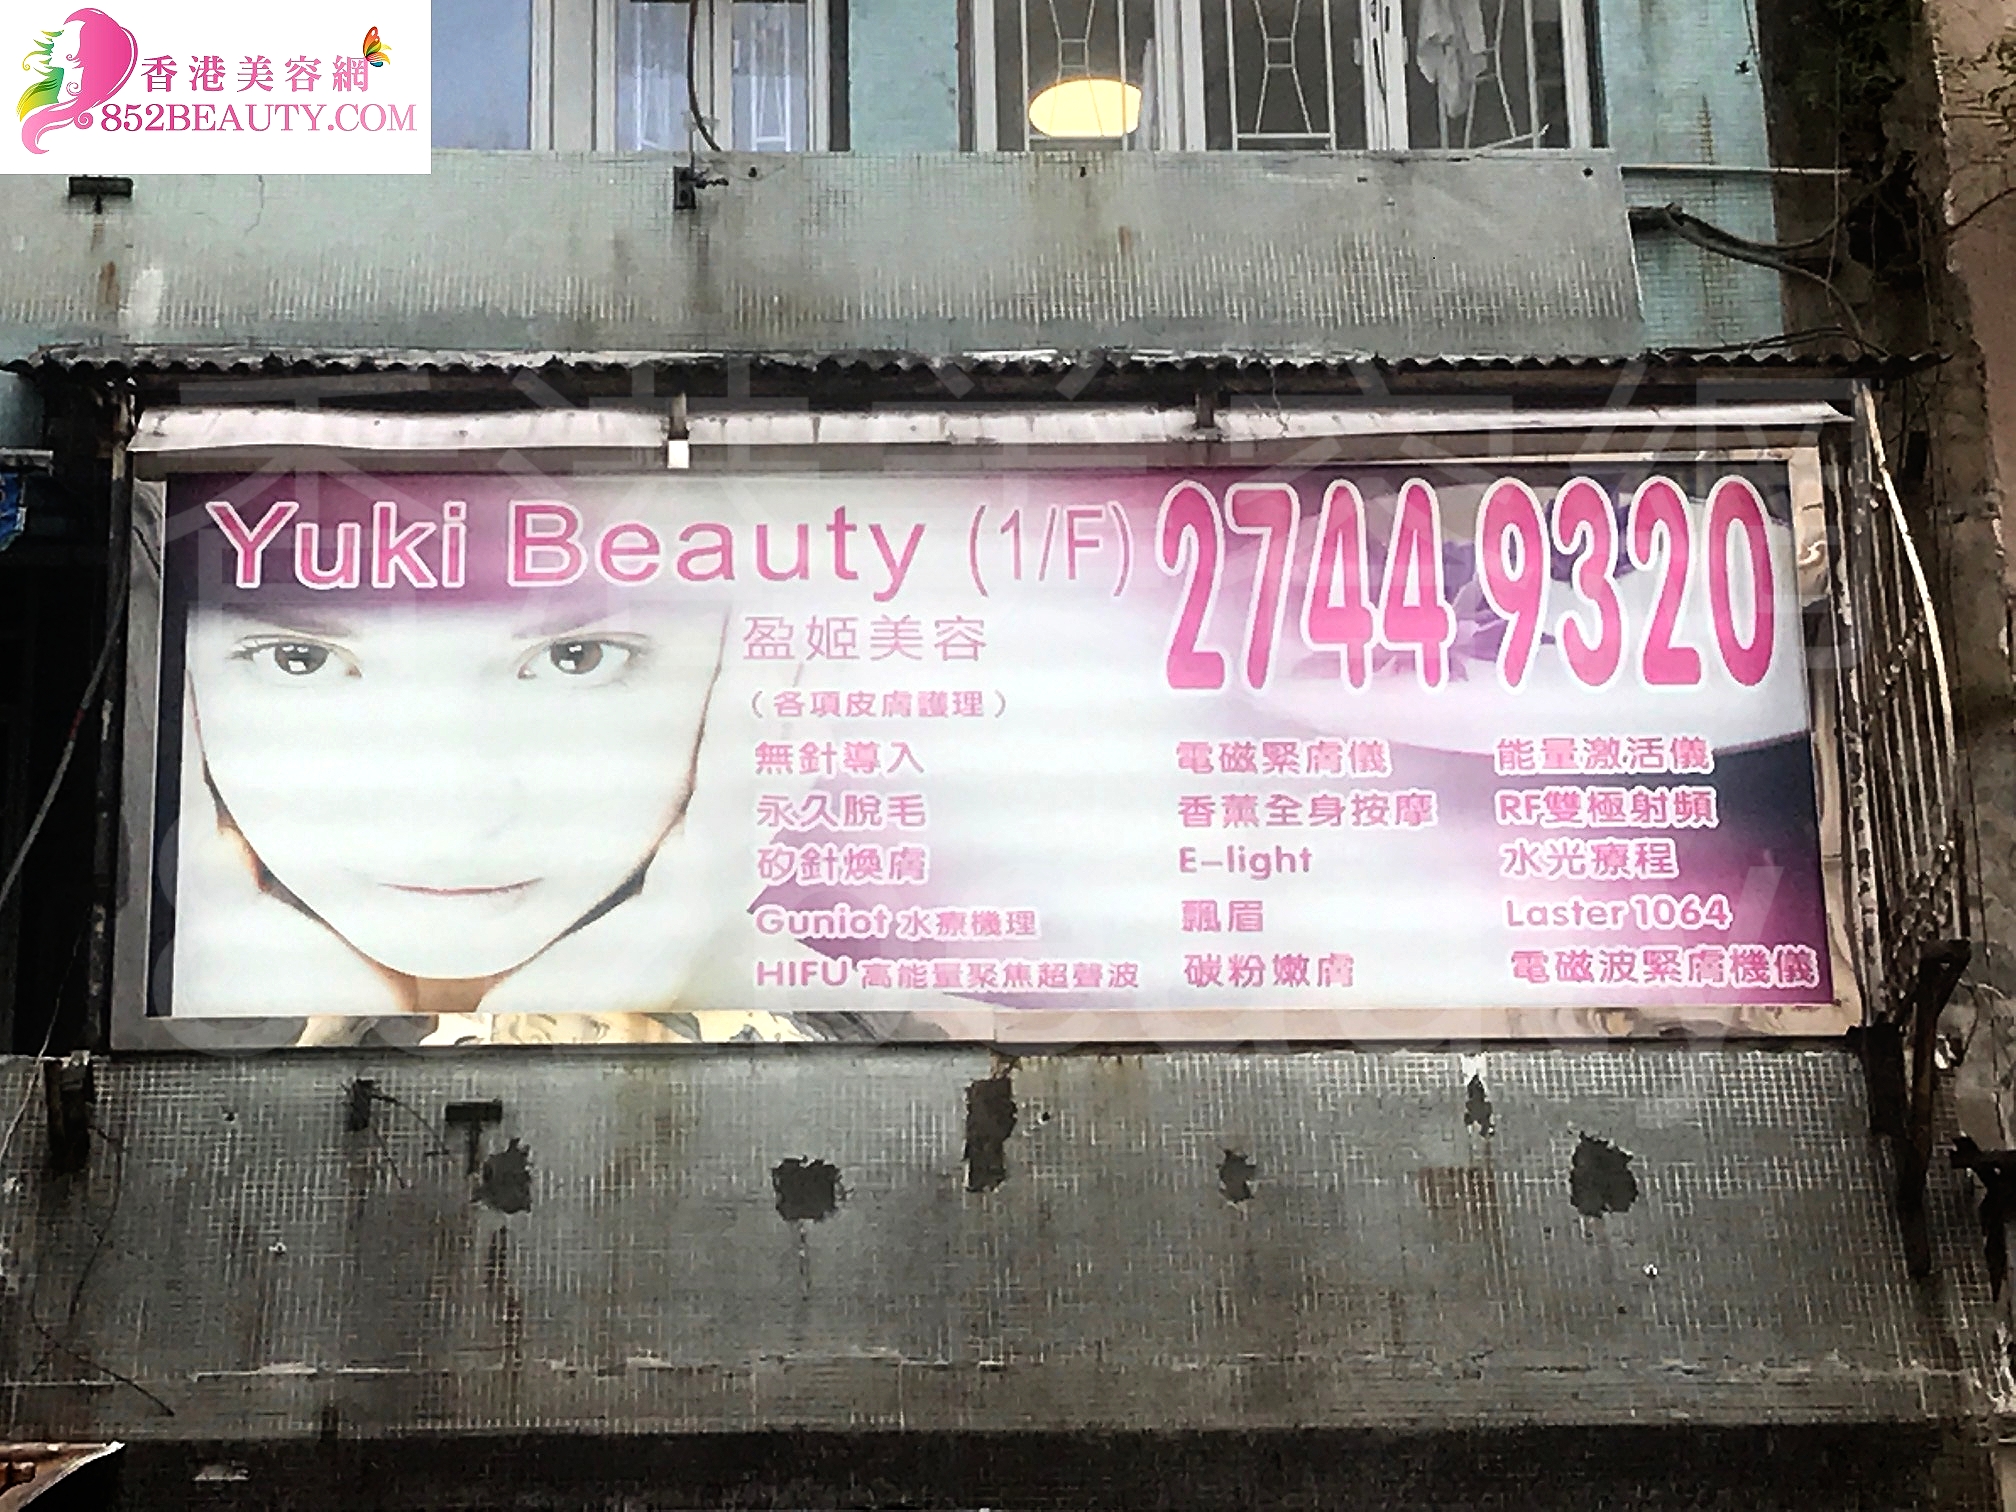 香港美容網 Hong Kong Beauty Salon 美容院 / 美容師: Yuki Beauty 盈姬美容